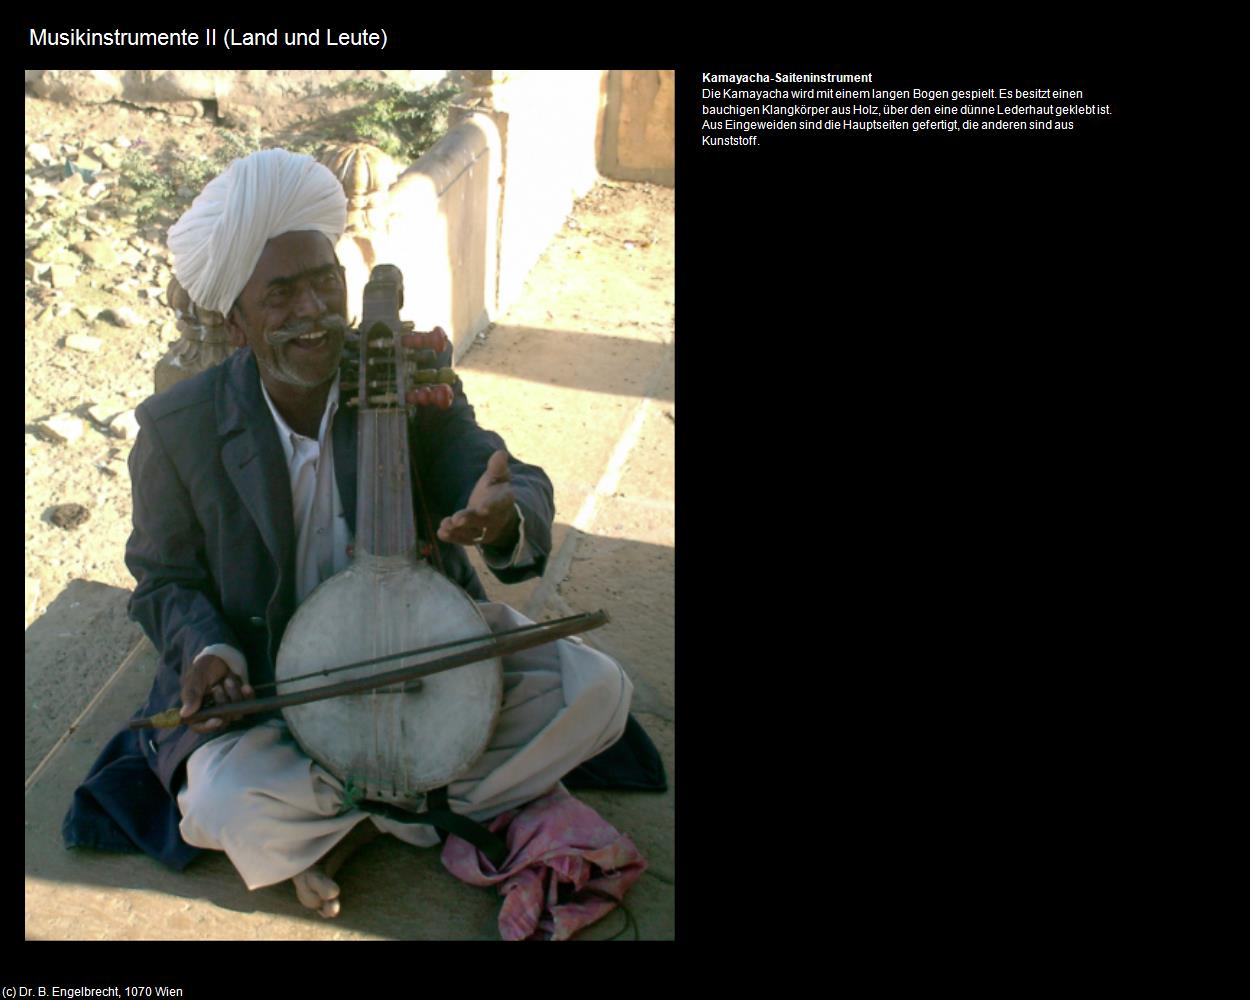 Musikinstrumente II (Rajasthan-Musik) in Rajasthan - das Land der Könige